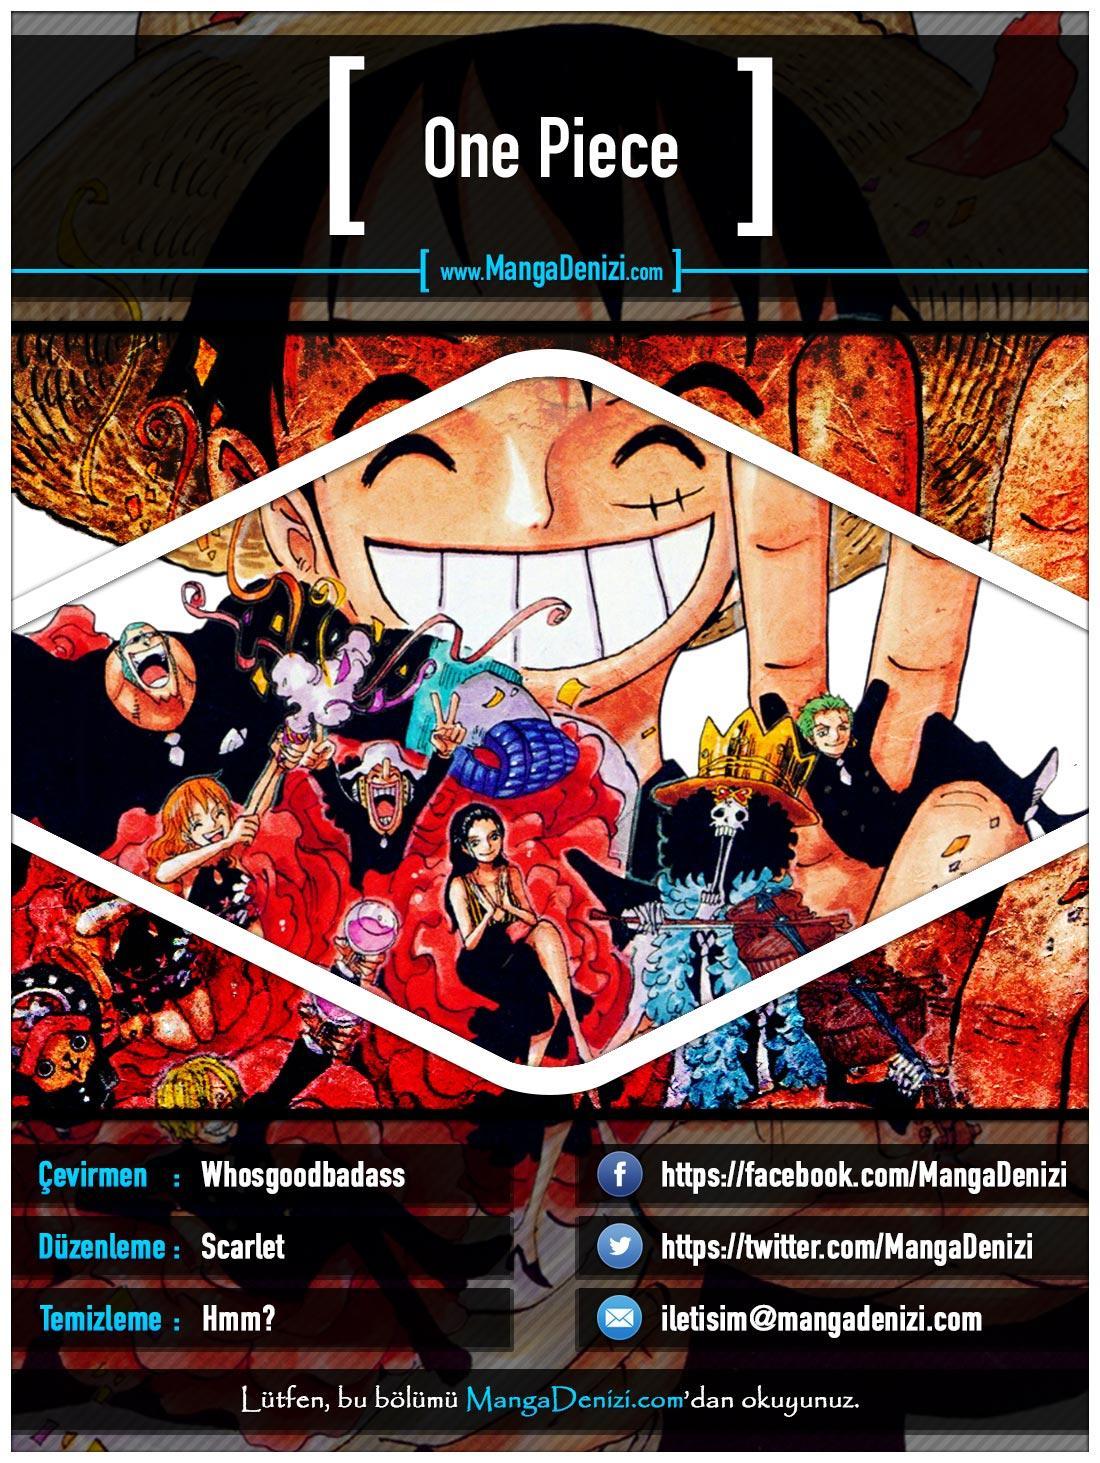 One Piece [Renkli] mangasının 0645 bölümünün 1. sayfasını okuyorsunuz.